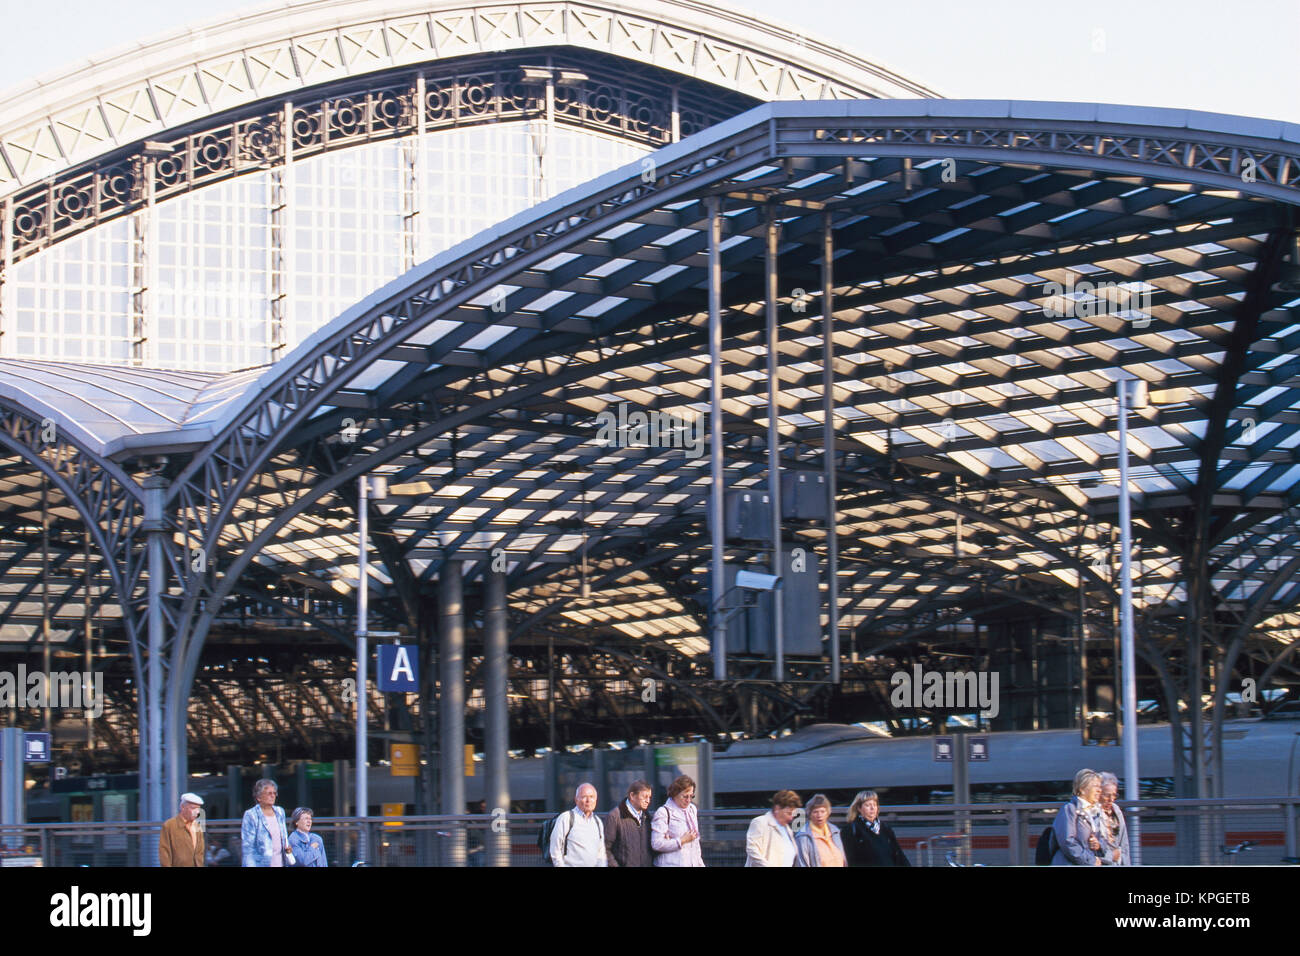 Alemania, Colonia (Köln), la Estación Central de Colonia, el tren de alta velocidad. Foto de stock